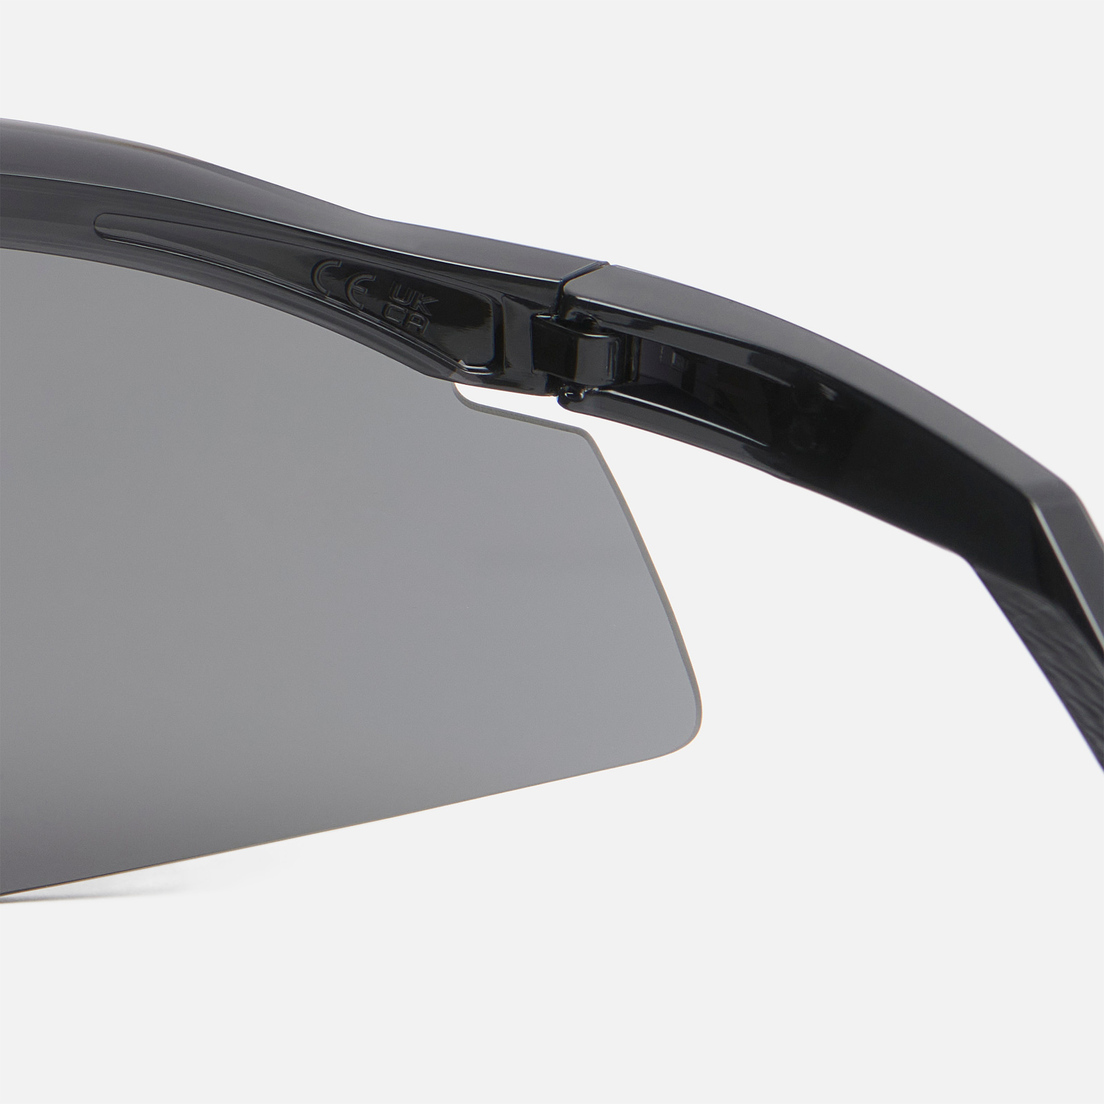 Oakley Солнцезащитные очки Hydra